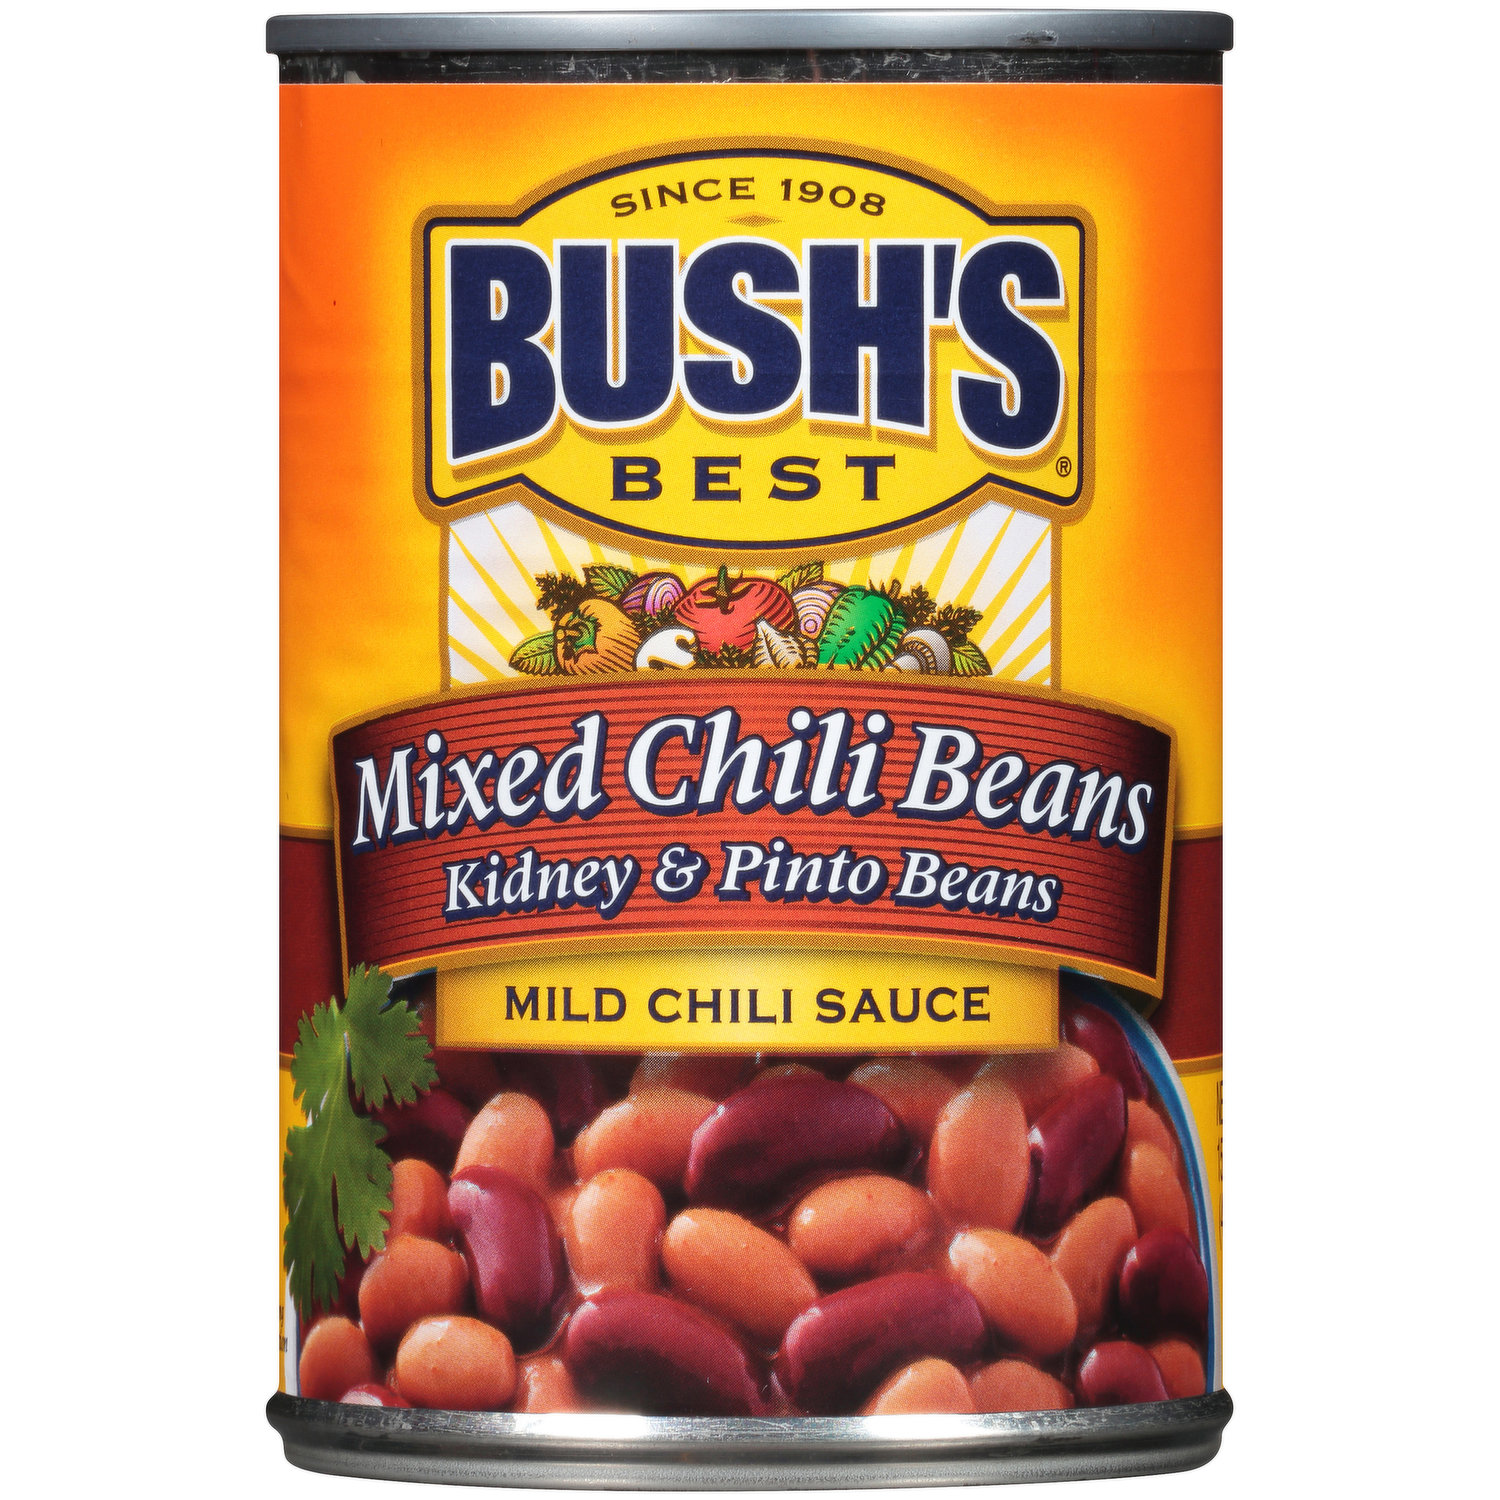 Bush's Best Chili Starter Original Mild Chili Mix, Chili & Kidney